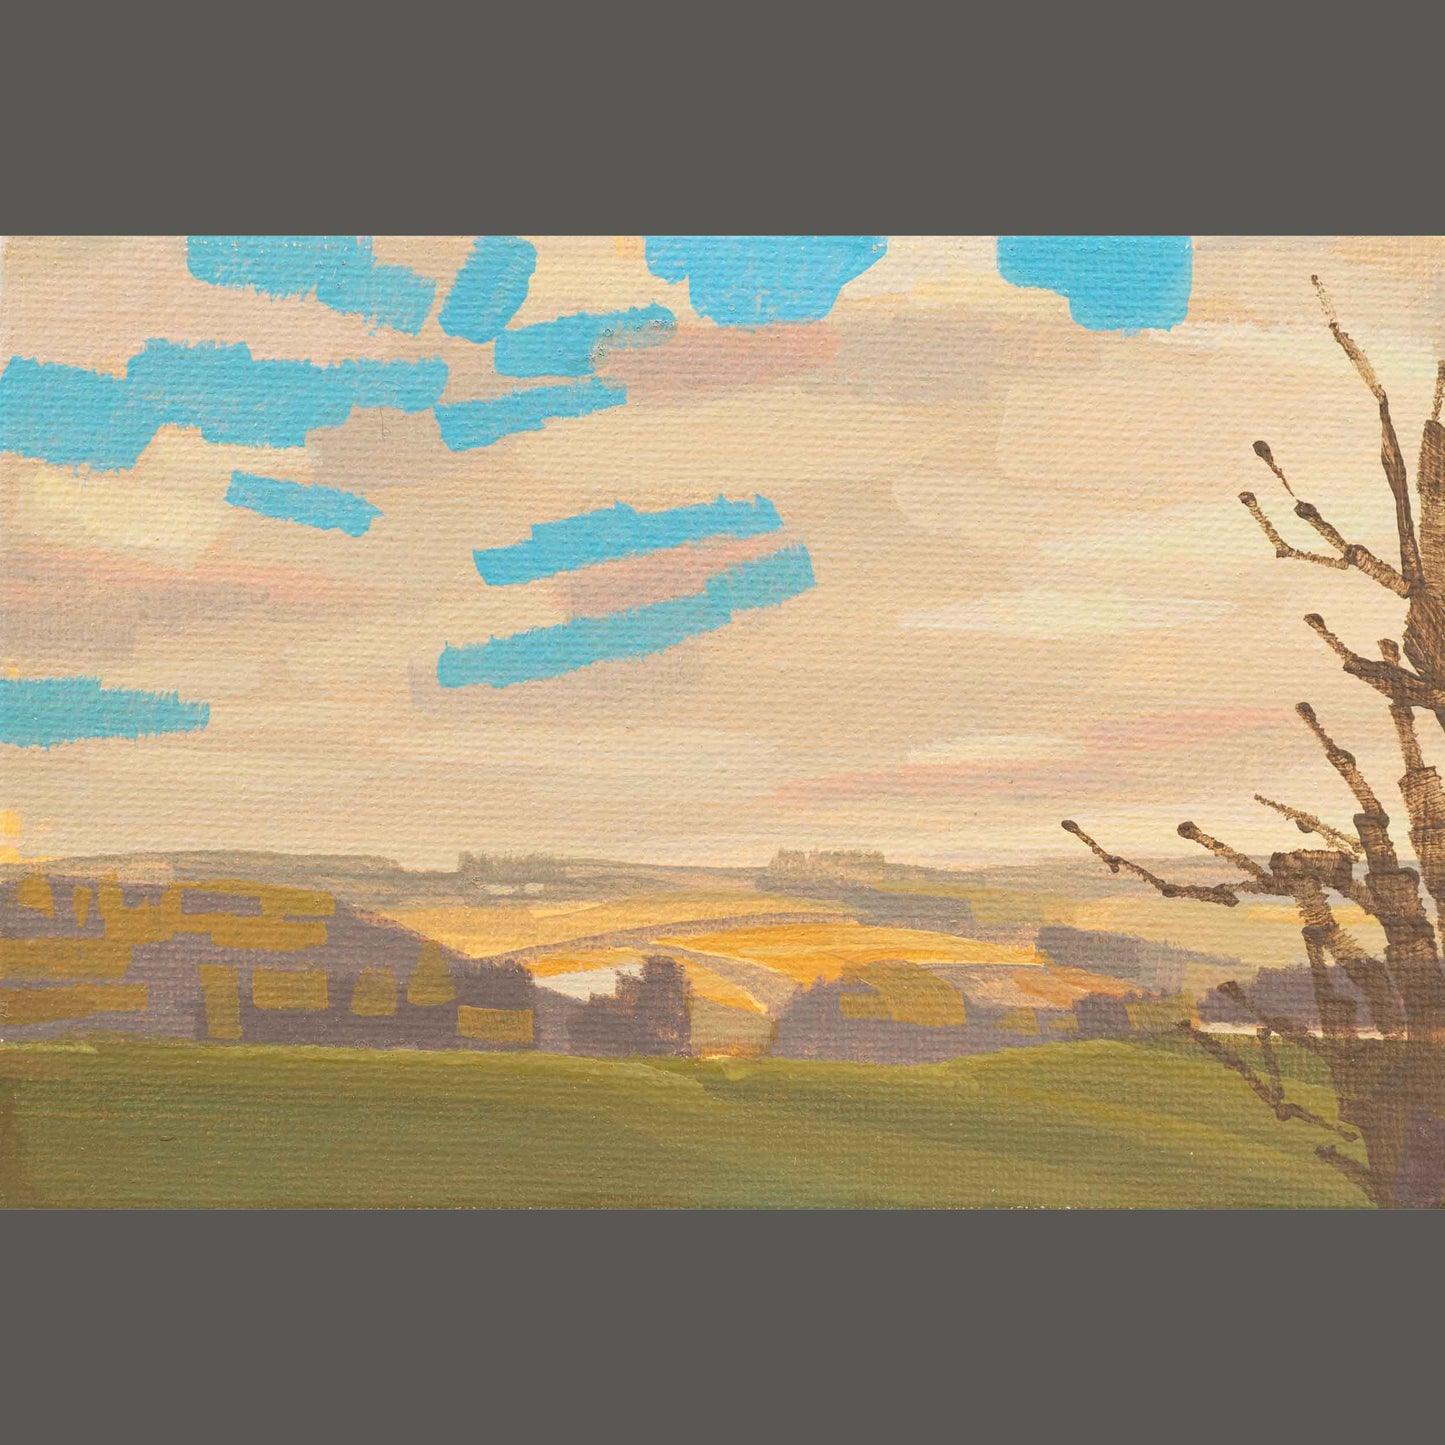 Original Gemälde – "Abendsonne" - handgemalt – Acrylbild – 10x15 cm – Landschaft Bild – Einzelstück – mit Rahmen